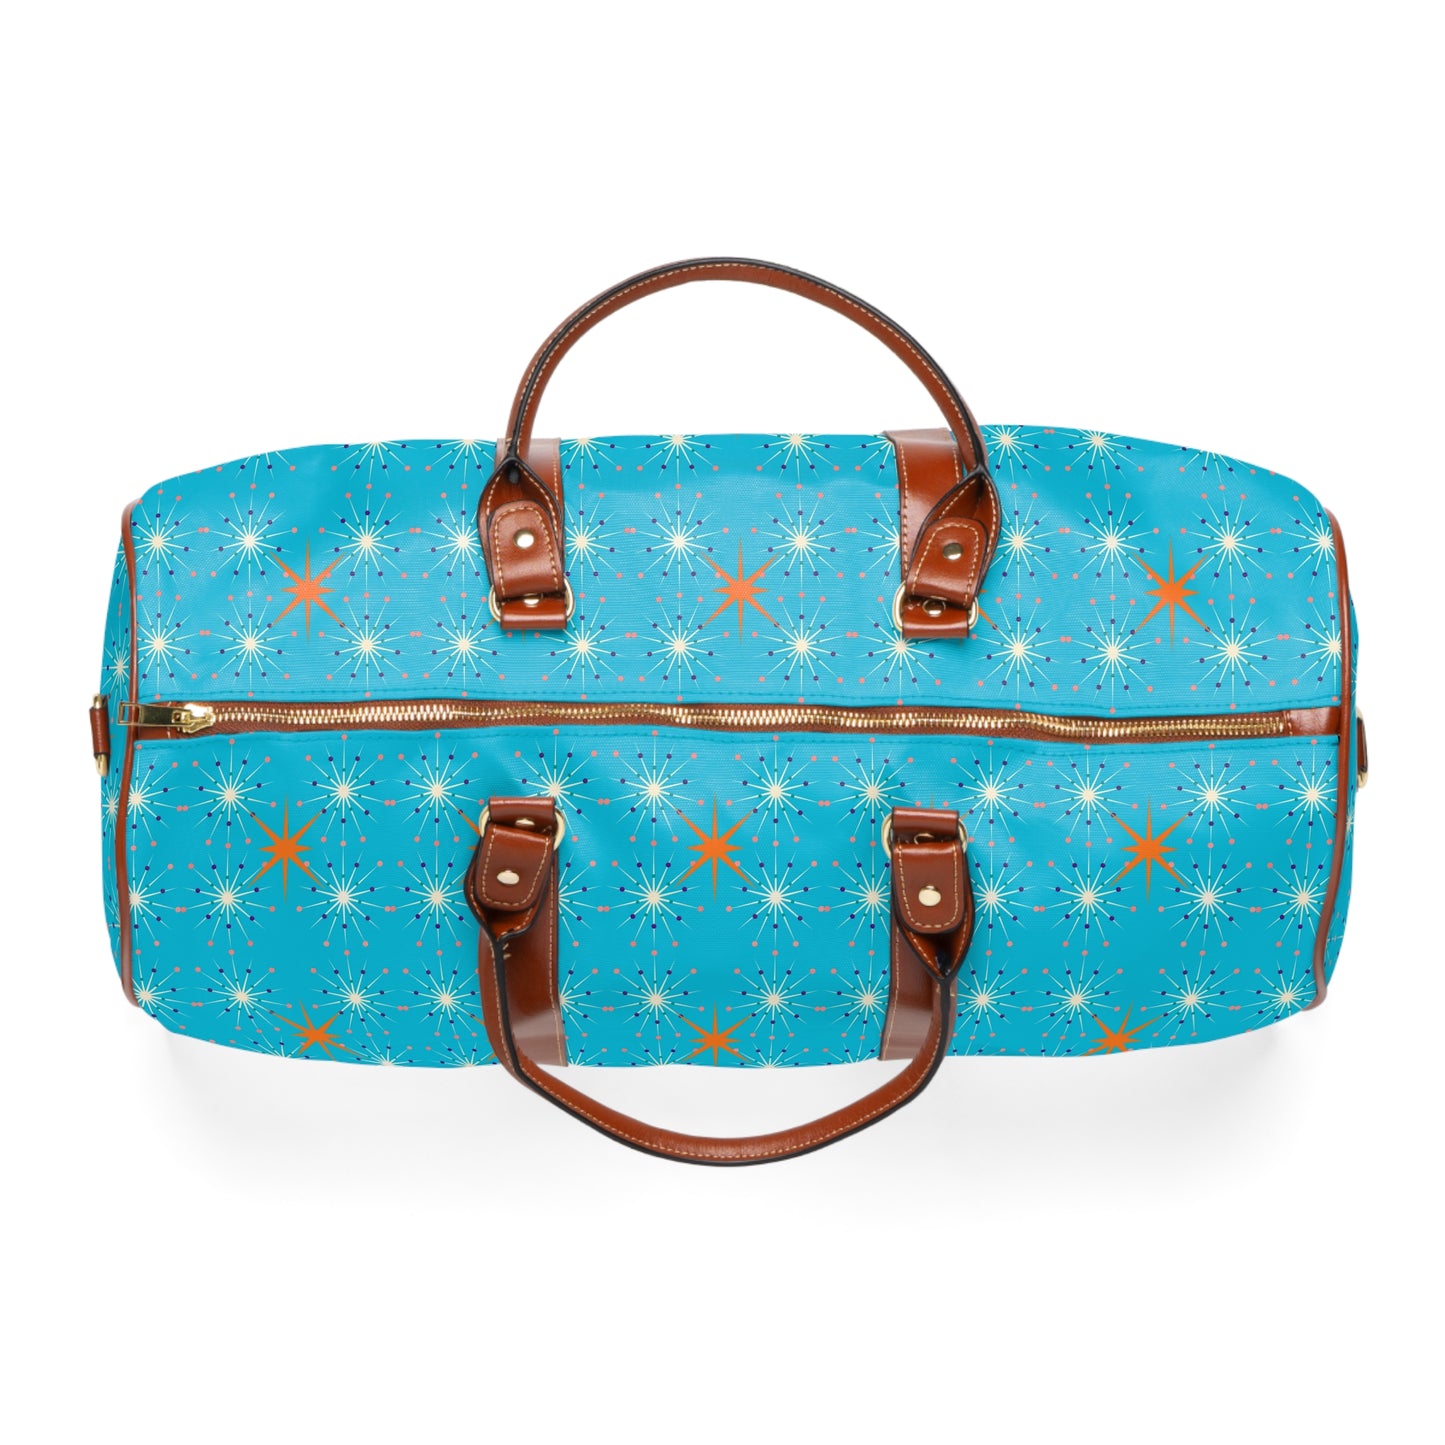 Midcentury Modern Atomic Stars Turquoise Pattern Waterproof Travel Bag